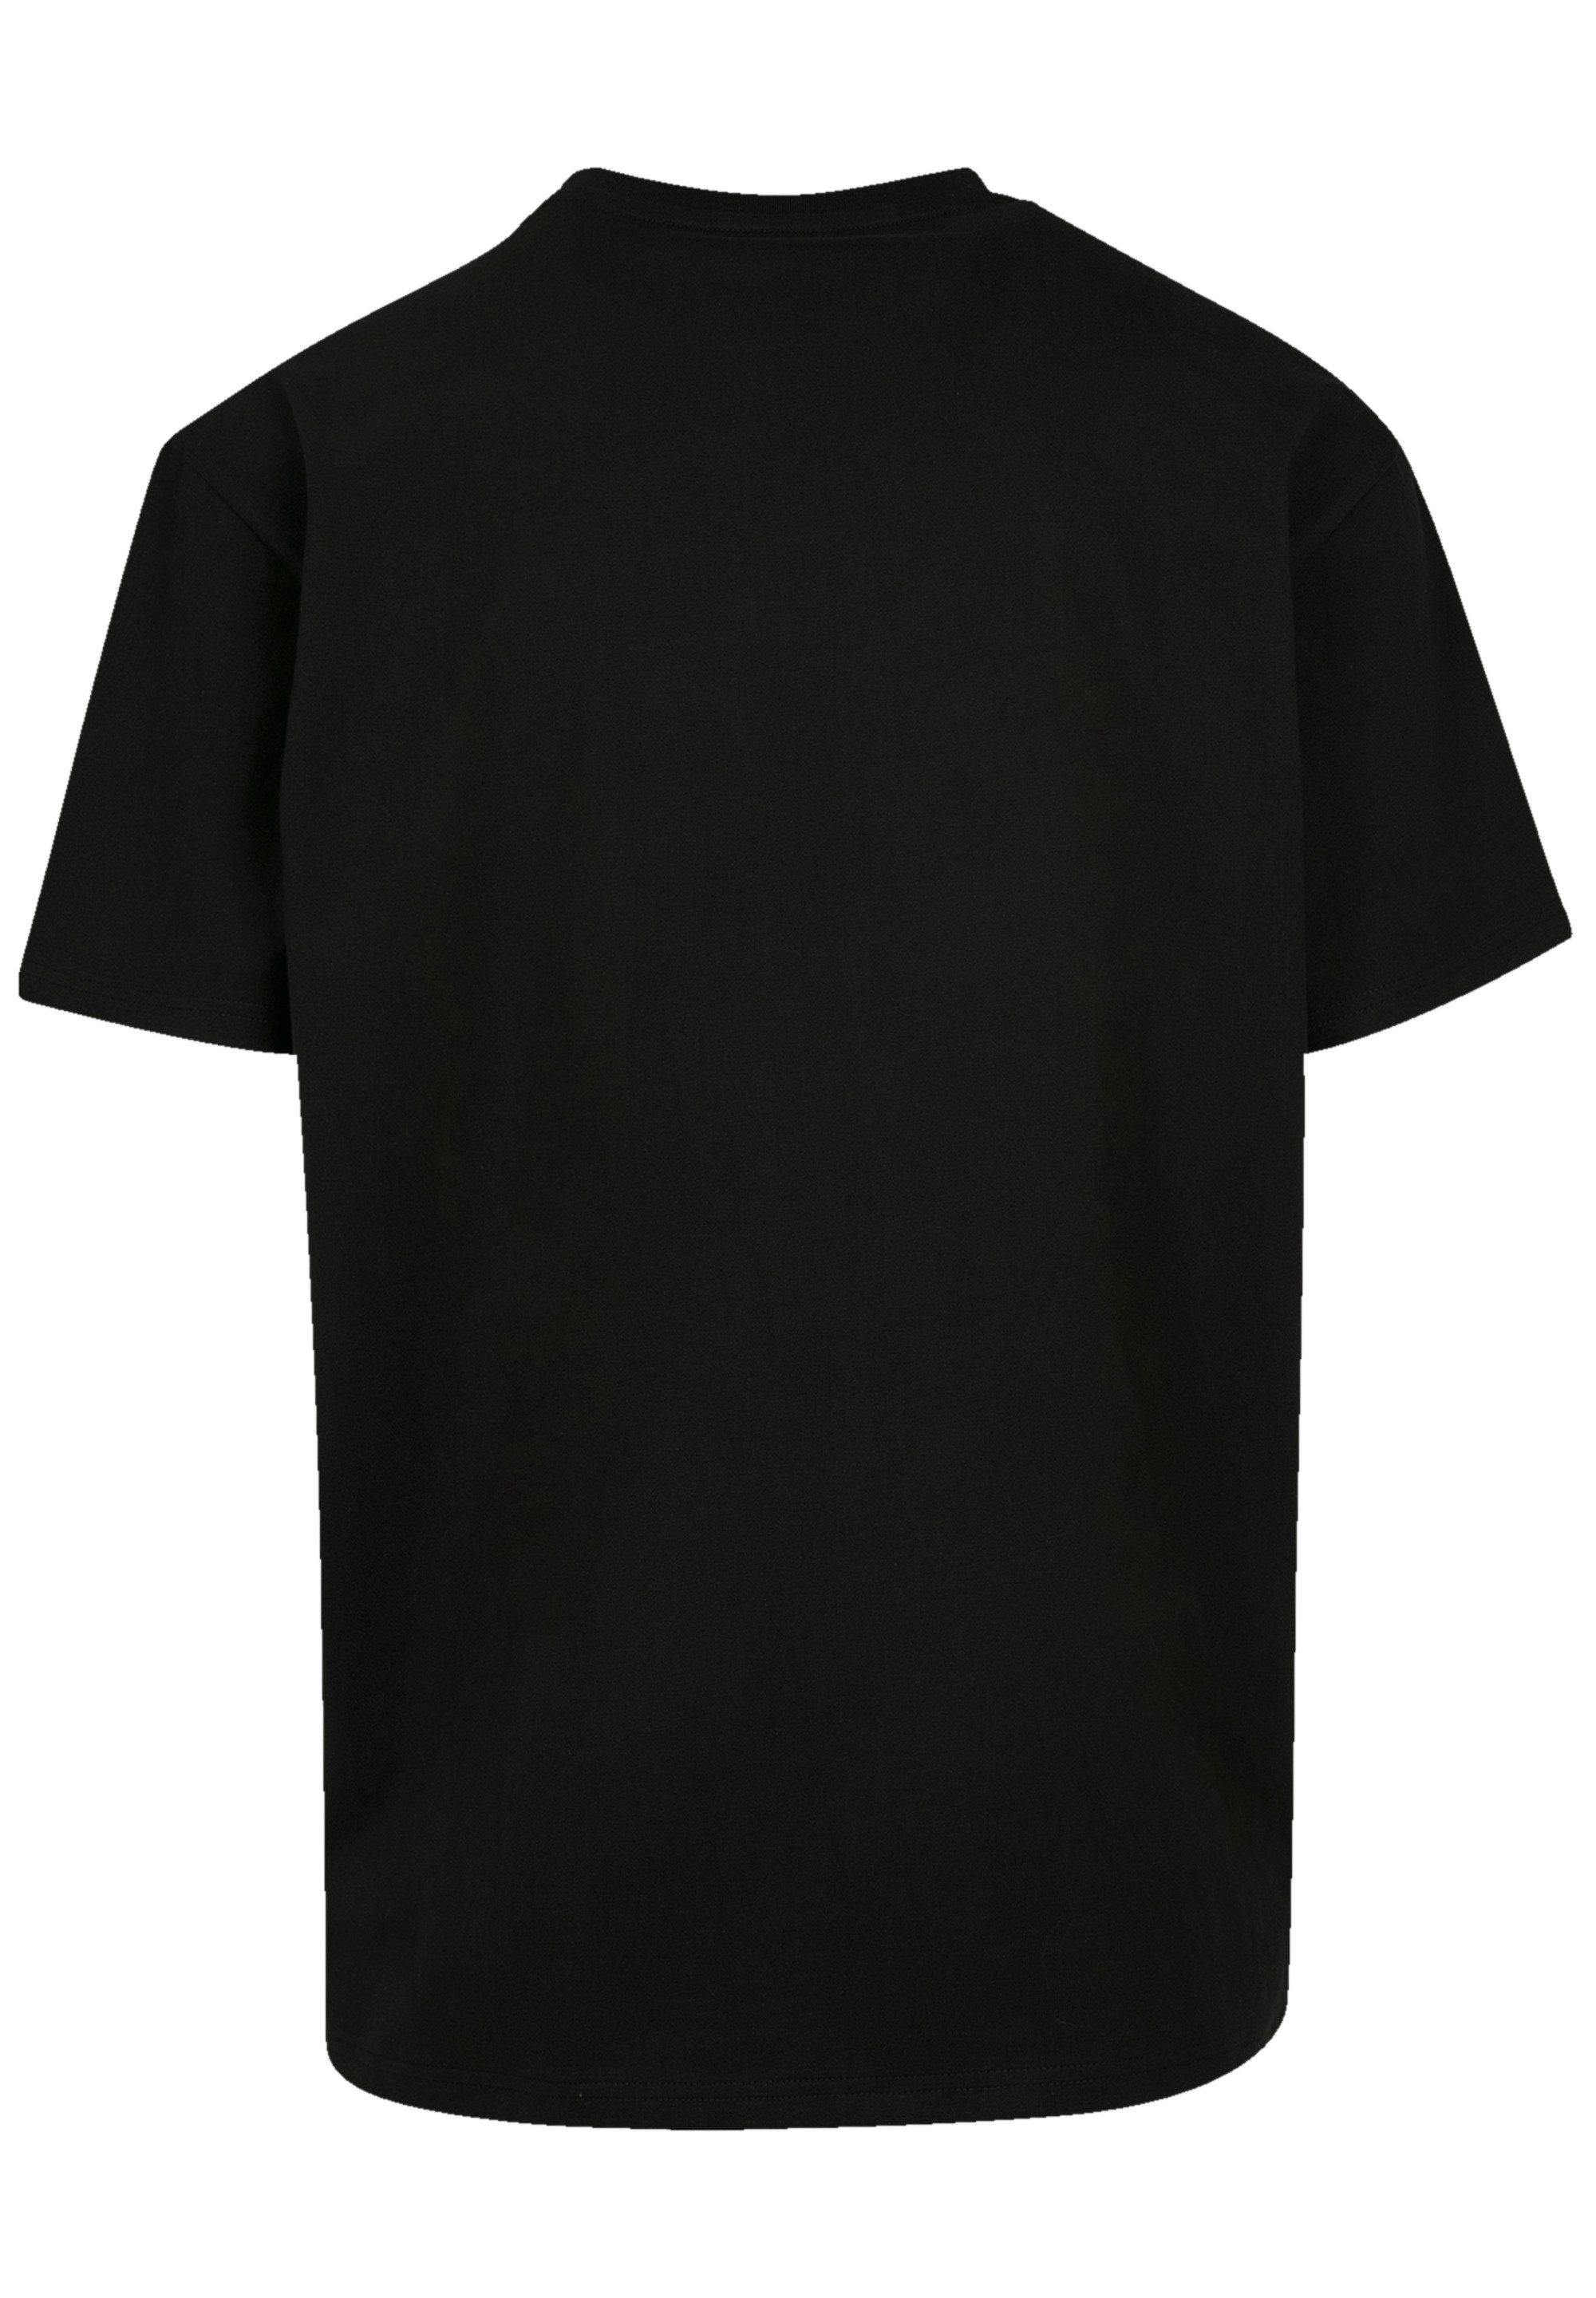 F4NT4STIC T-Shirt Disturbed Heavy Metal DNA Swirl Premium Qualität, Rock- Musik, Band, Weite Passform und überschnittene Schultern